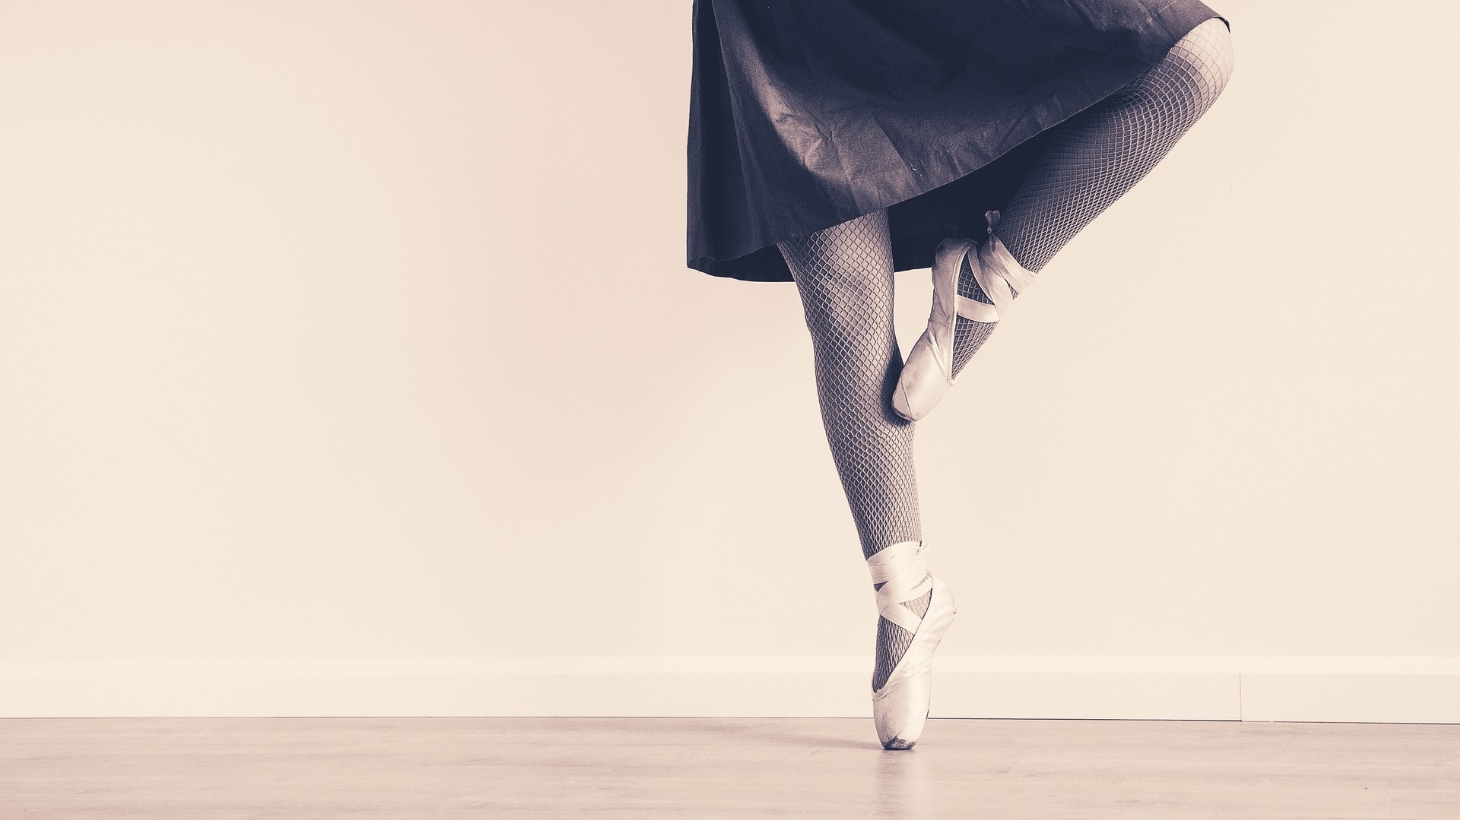 Escola Livre de Dança abre inscrição para processo seletivo | Jornal da Orla